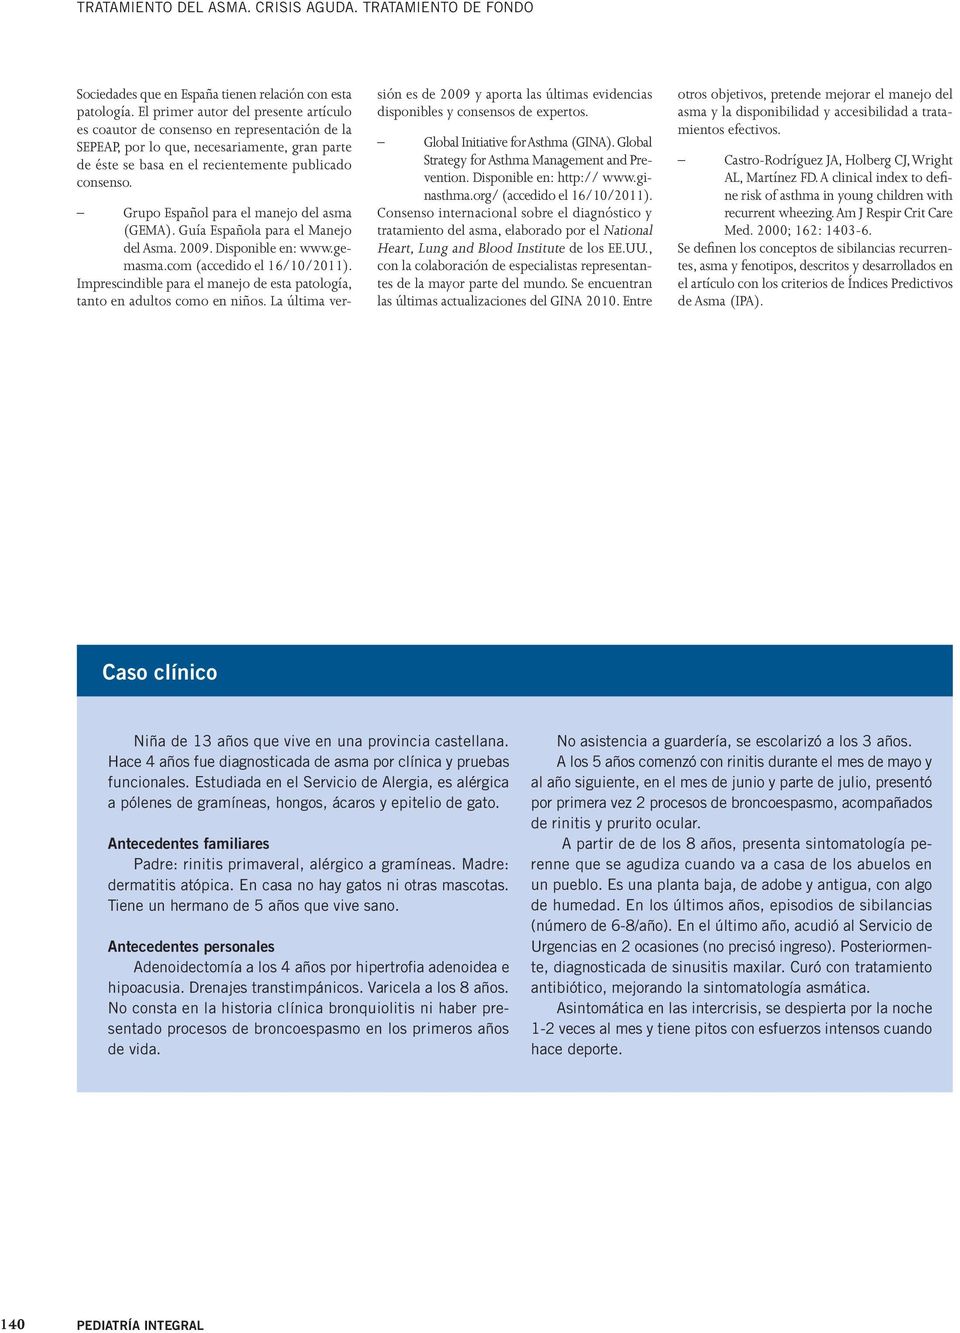 Grupo Español para el manejo del asma (GEMA). Guía Española para el Manejo del Asma. 2009. Disponible en: www.gemasma.com (accedido el 16/10/2011).